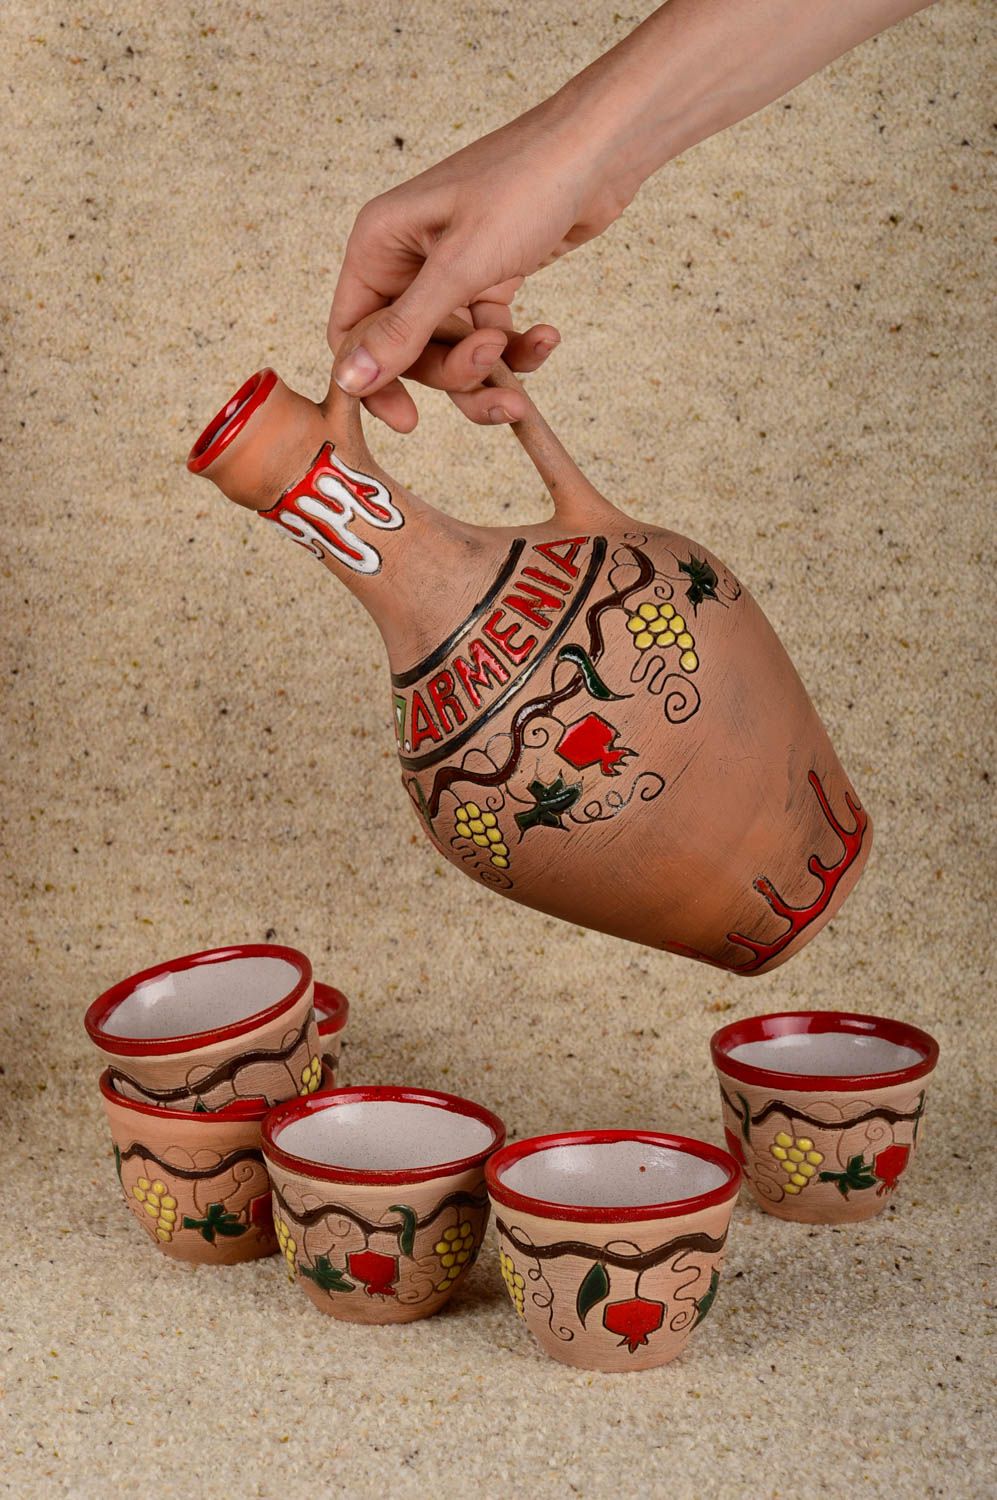 Vasos y jarro de cerámica artesanales accesorios de cocina elementos decorativos foto 1